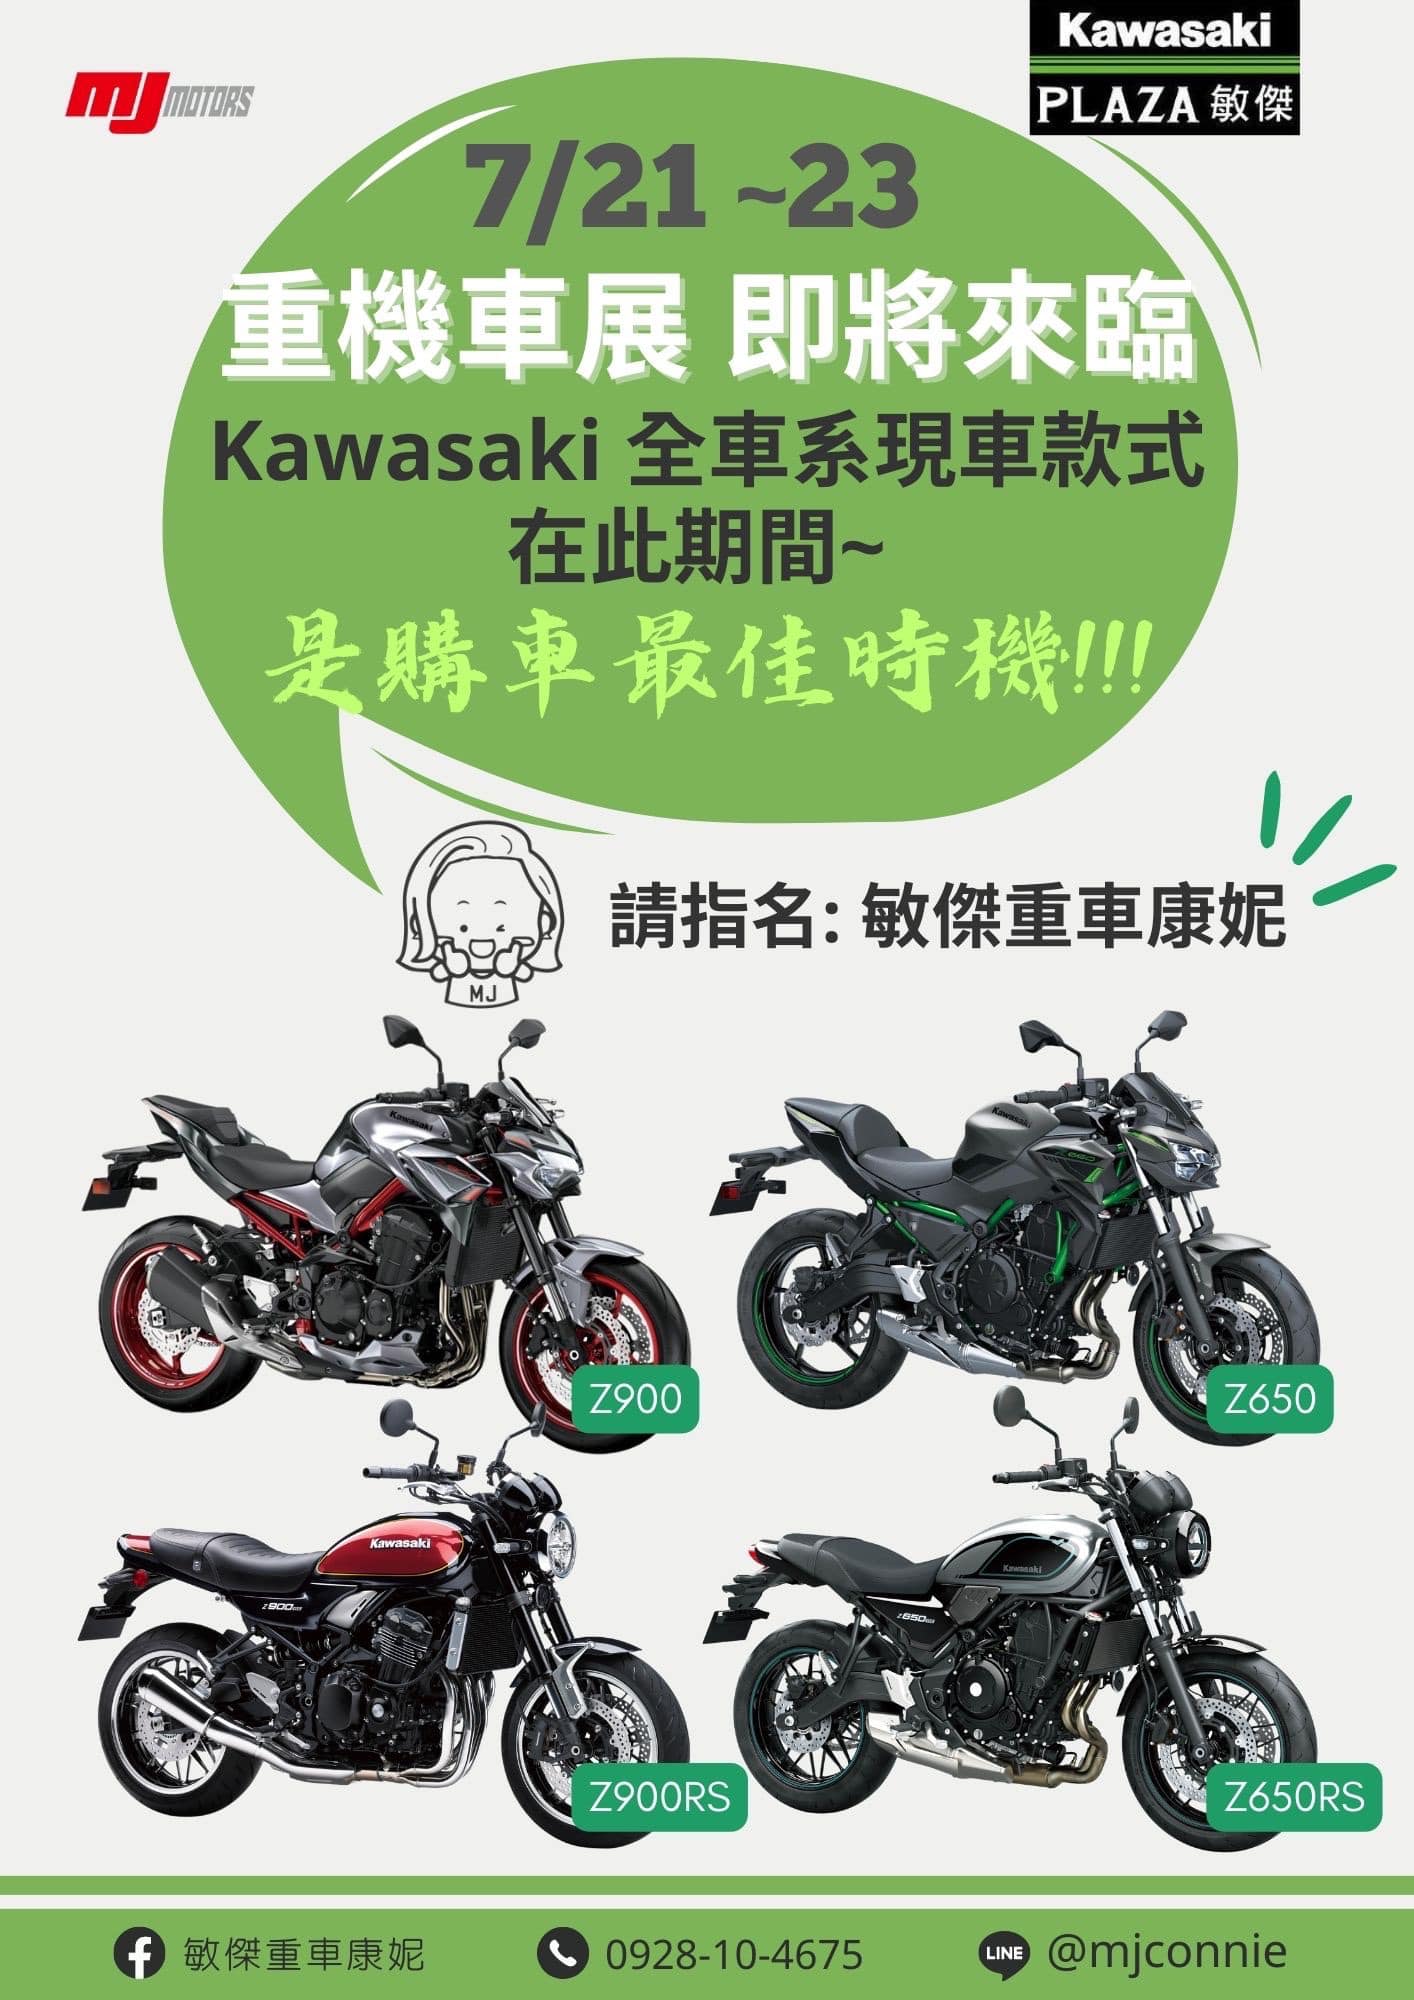 【敏傑車業資深銷售專員 康妮 Connie】KAWASAKI NINJA400 - 「Webike-摩托車市」 『敏傑康妮』重機界盛事 年度重機展 本週 7/21-7/23 即將登場 康妮在7/23 週日會在Kawasaki展區